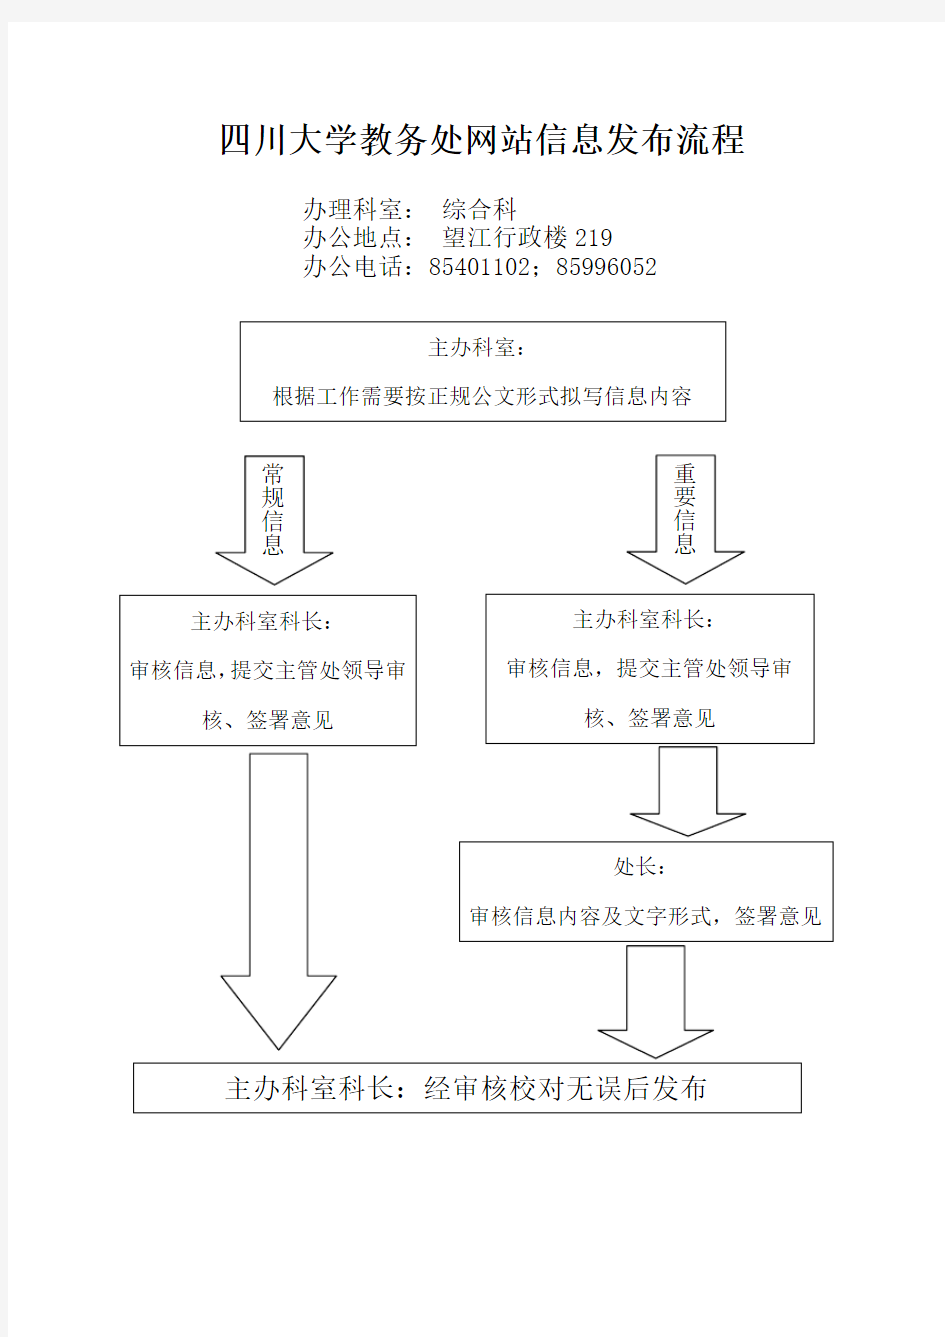 四川大学教务处网站信息发布流程图